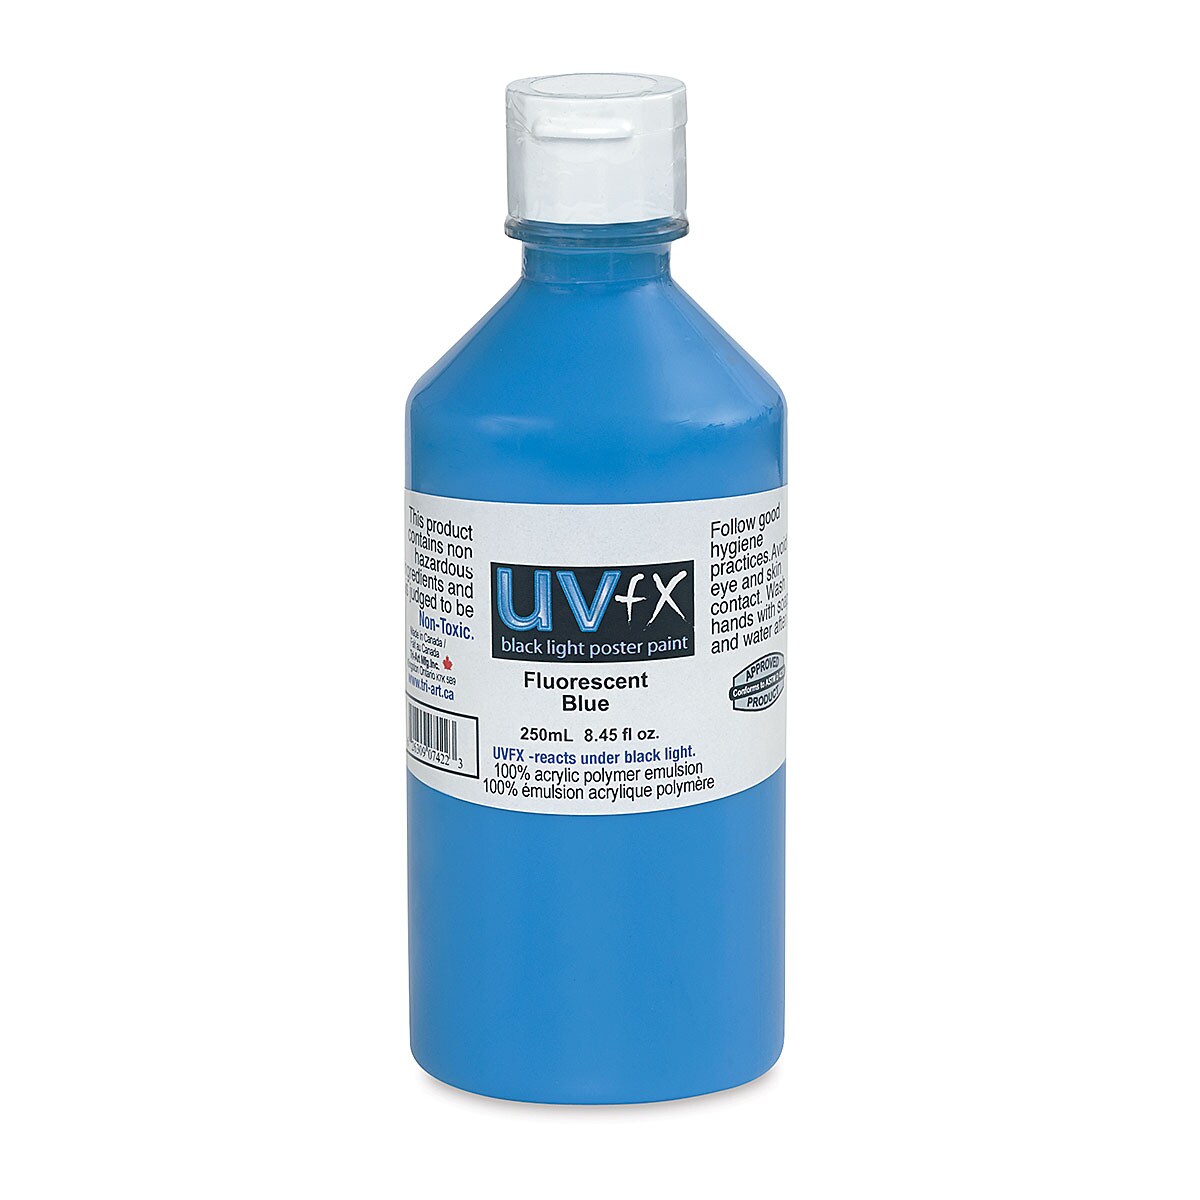 Tri-Art UVFX Black Light Poster Paint - Fluorescent Blue, 250 ml